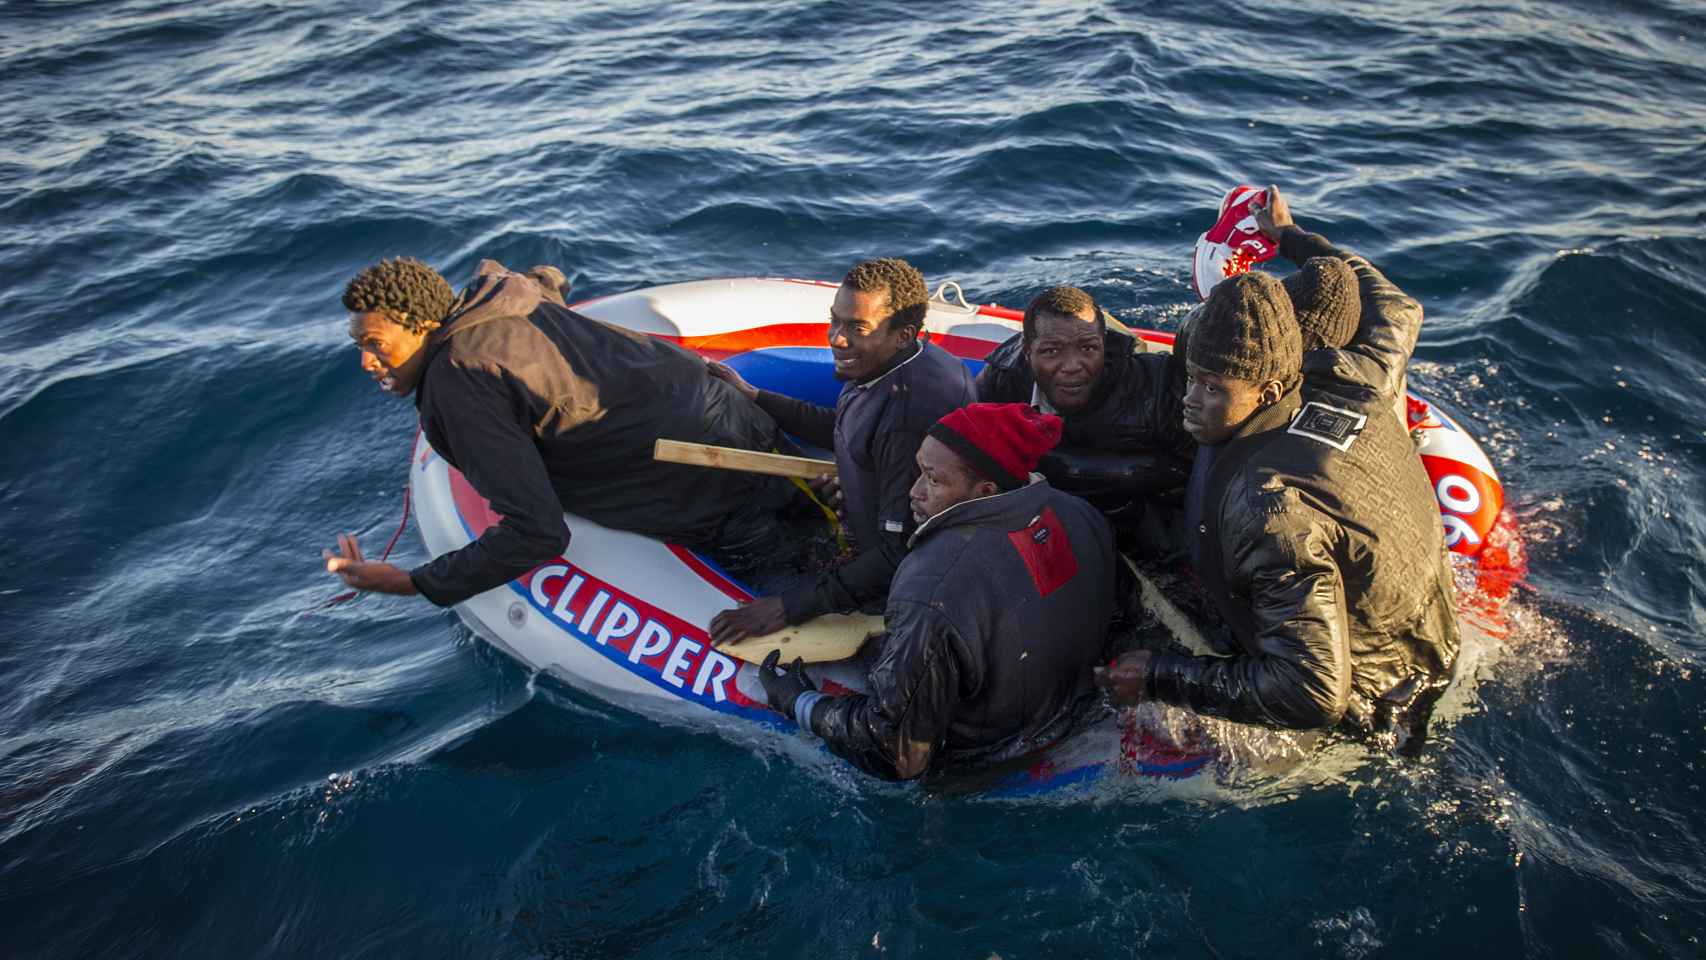 Emigrantes a la deriva en una barcaza de plástico en aguas del Estrecho de Gibraltar, en 2018. La imagen está tomada minutos antes de que Salvamento Marítimo los salvara de morir ahogados.